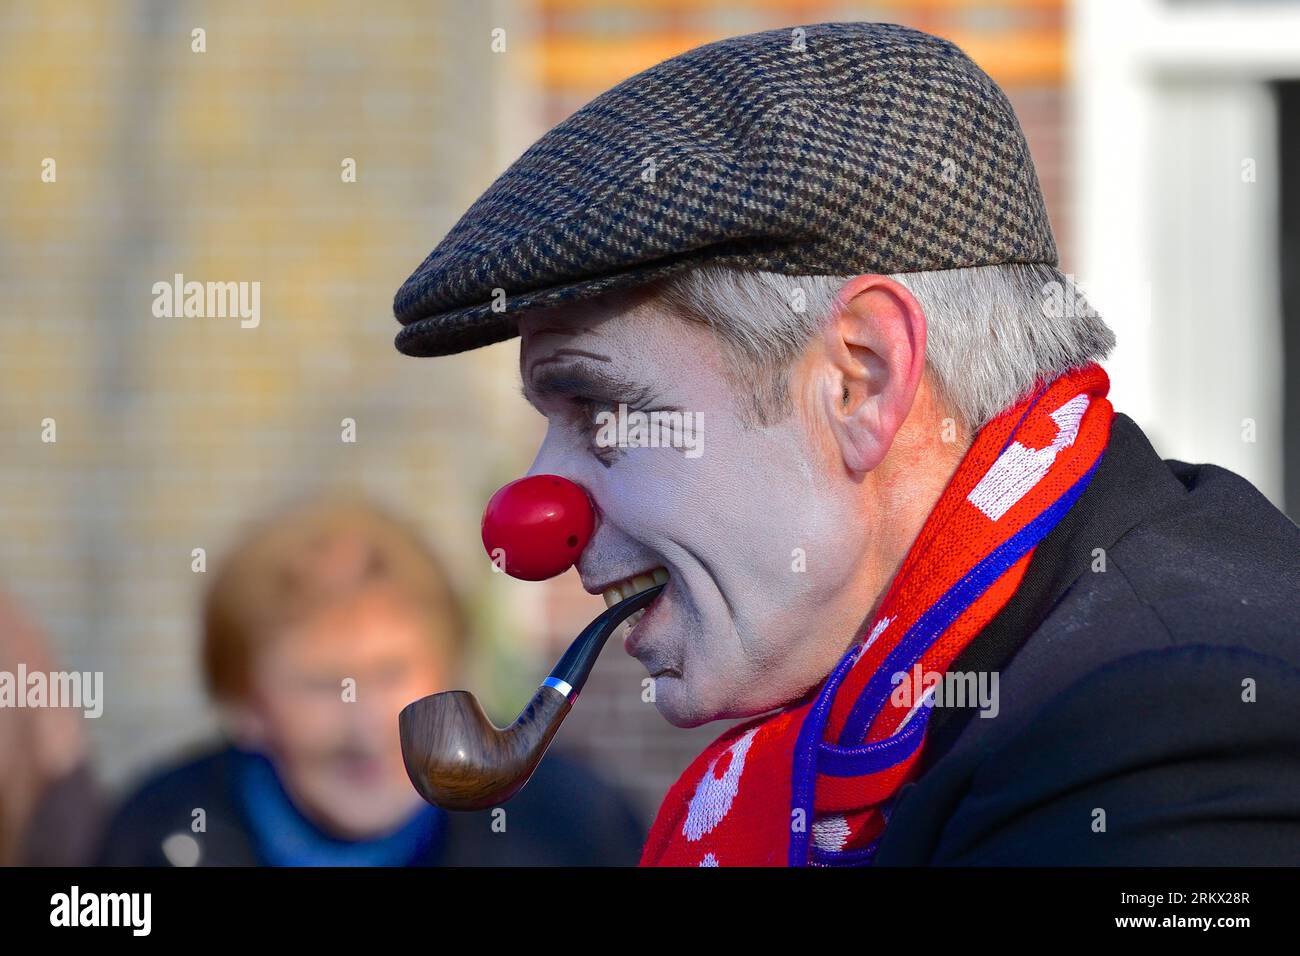 Portrait d'un homme avec un visage peint en blanc pâle, un nez de clown, une pipe dans la bouche avec un bonnet et une écharpe rouge-bleu autour du cou : carnaval Banque D'Images